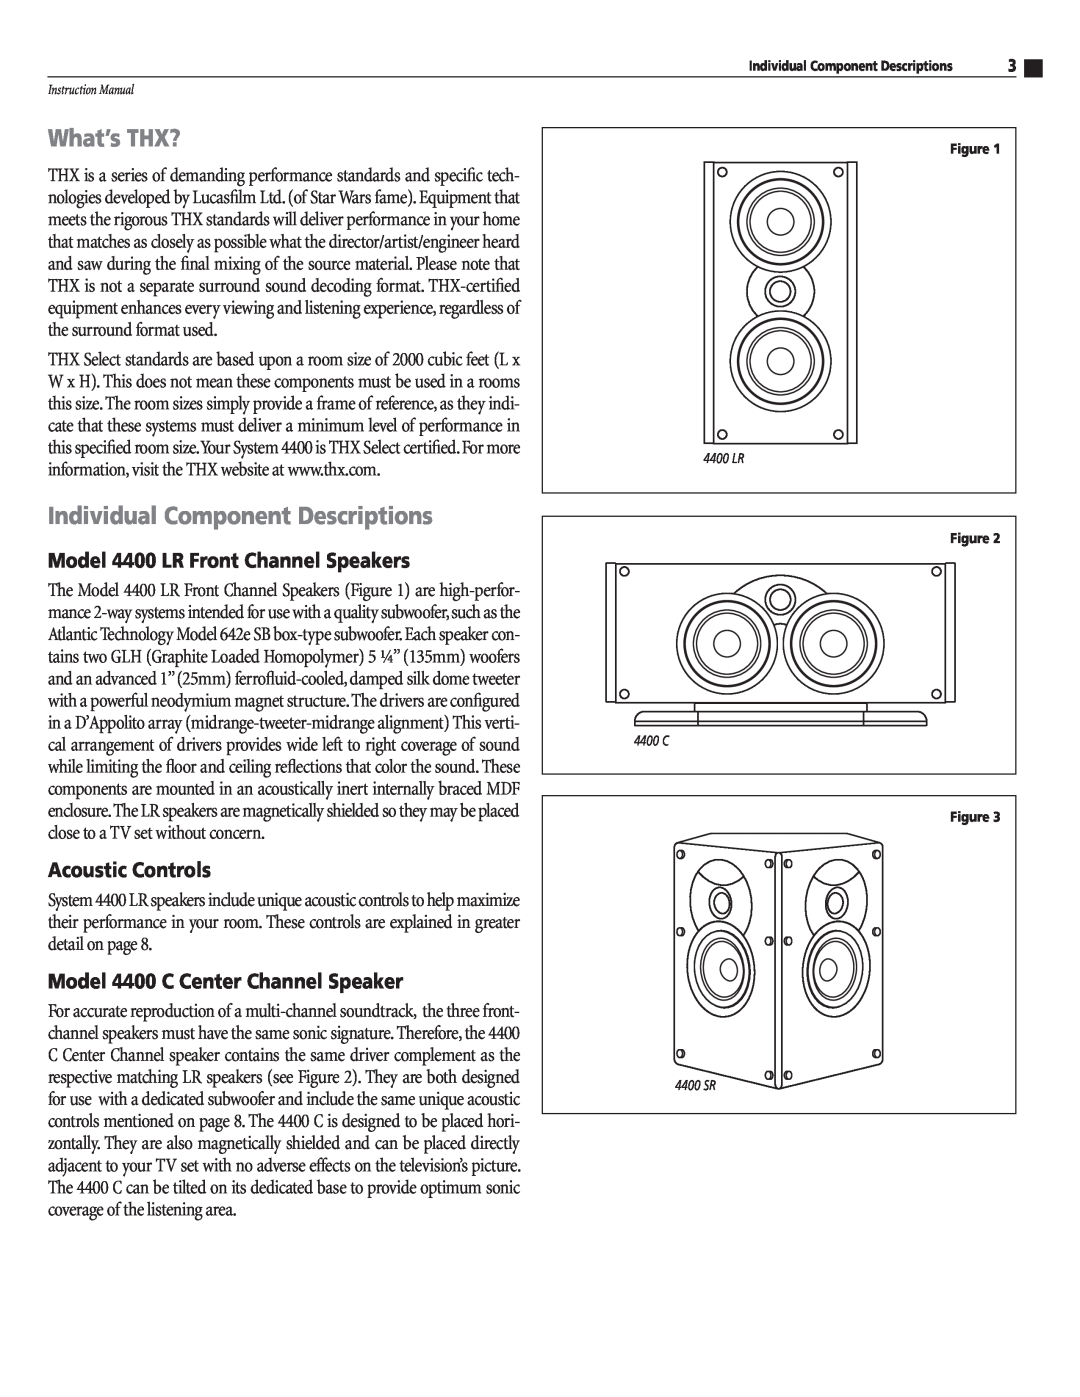 Atlantic Technology 4400 C What’s THX?, Individual Component Descriptions, Model 4400 LR Front Channel Speakers 